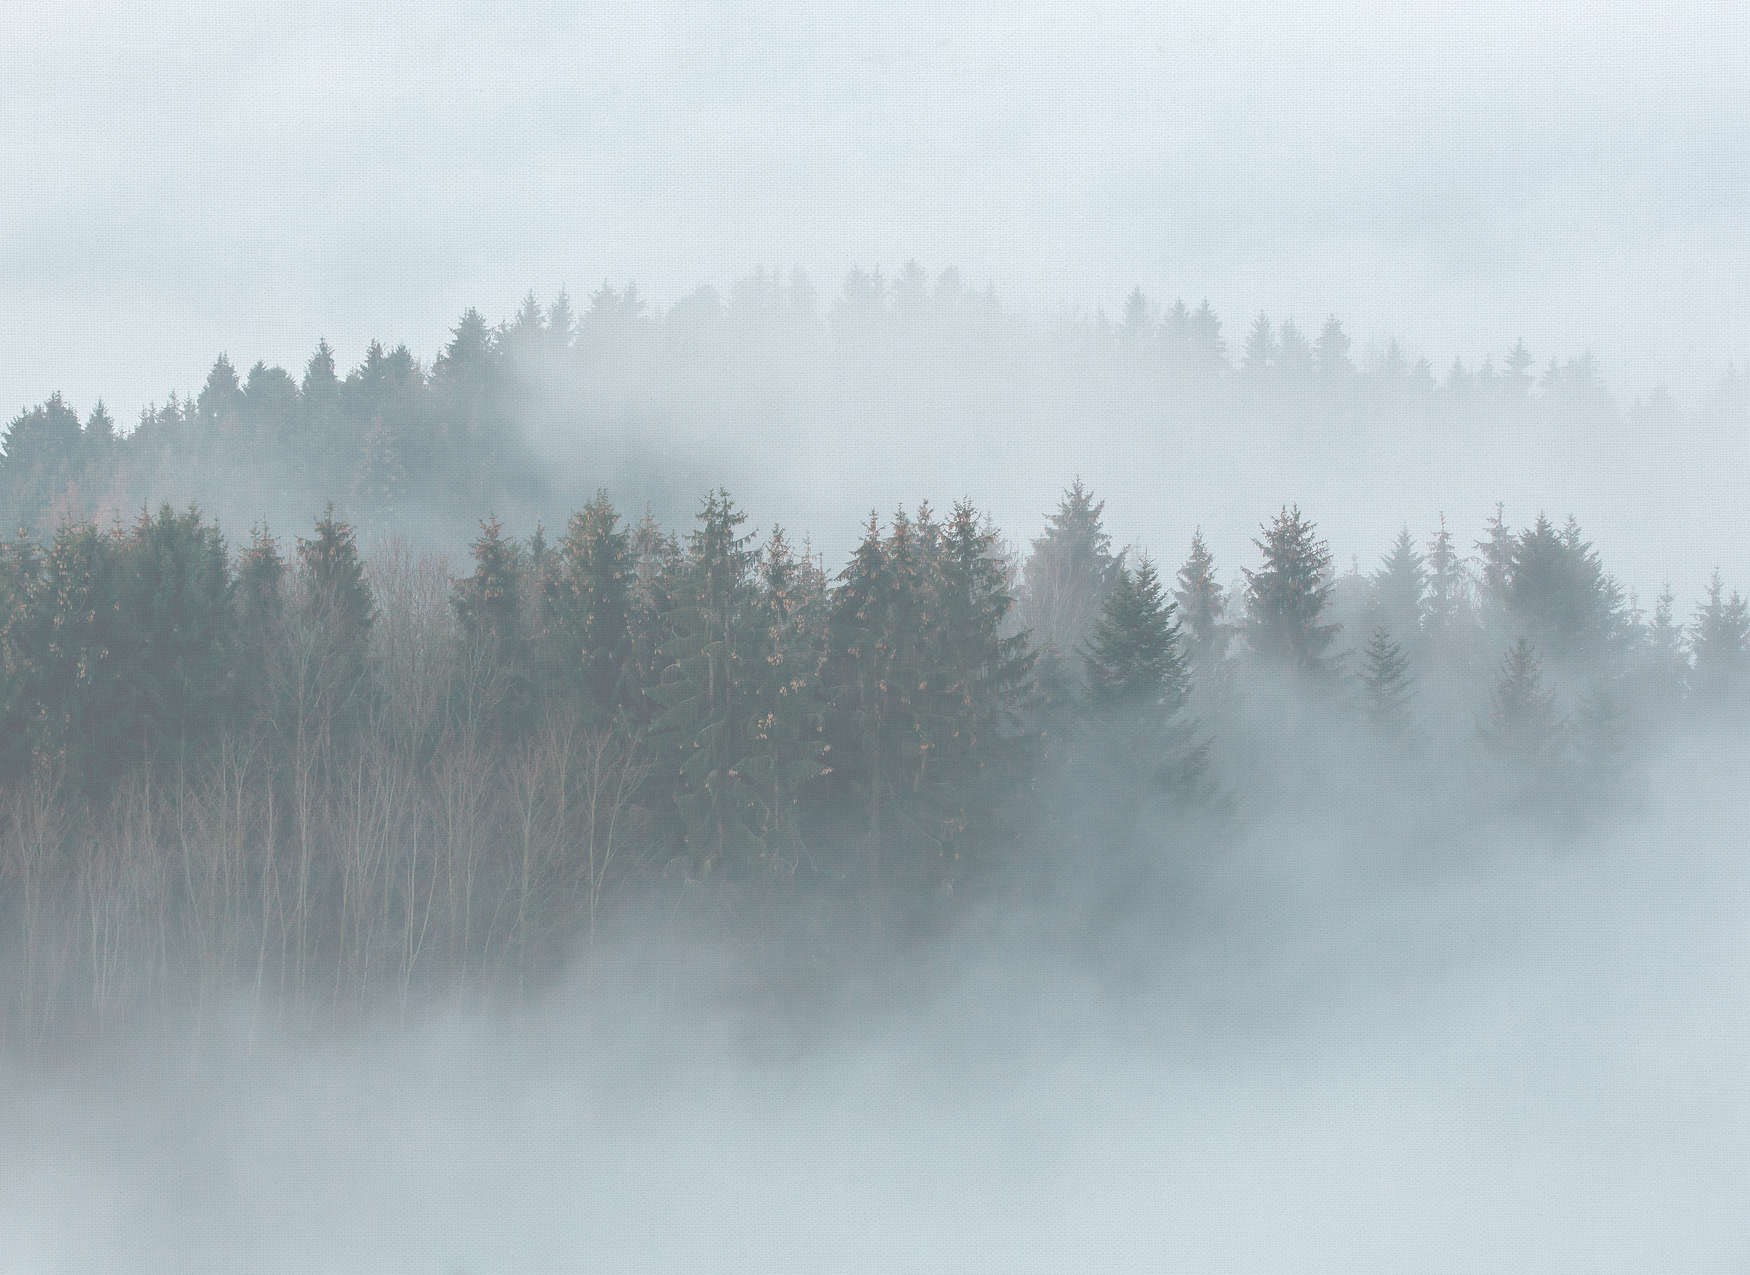             Bosque misterioso en la niebla - Blanco, verde, gris
        